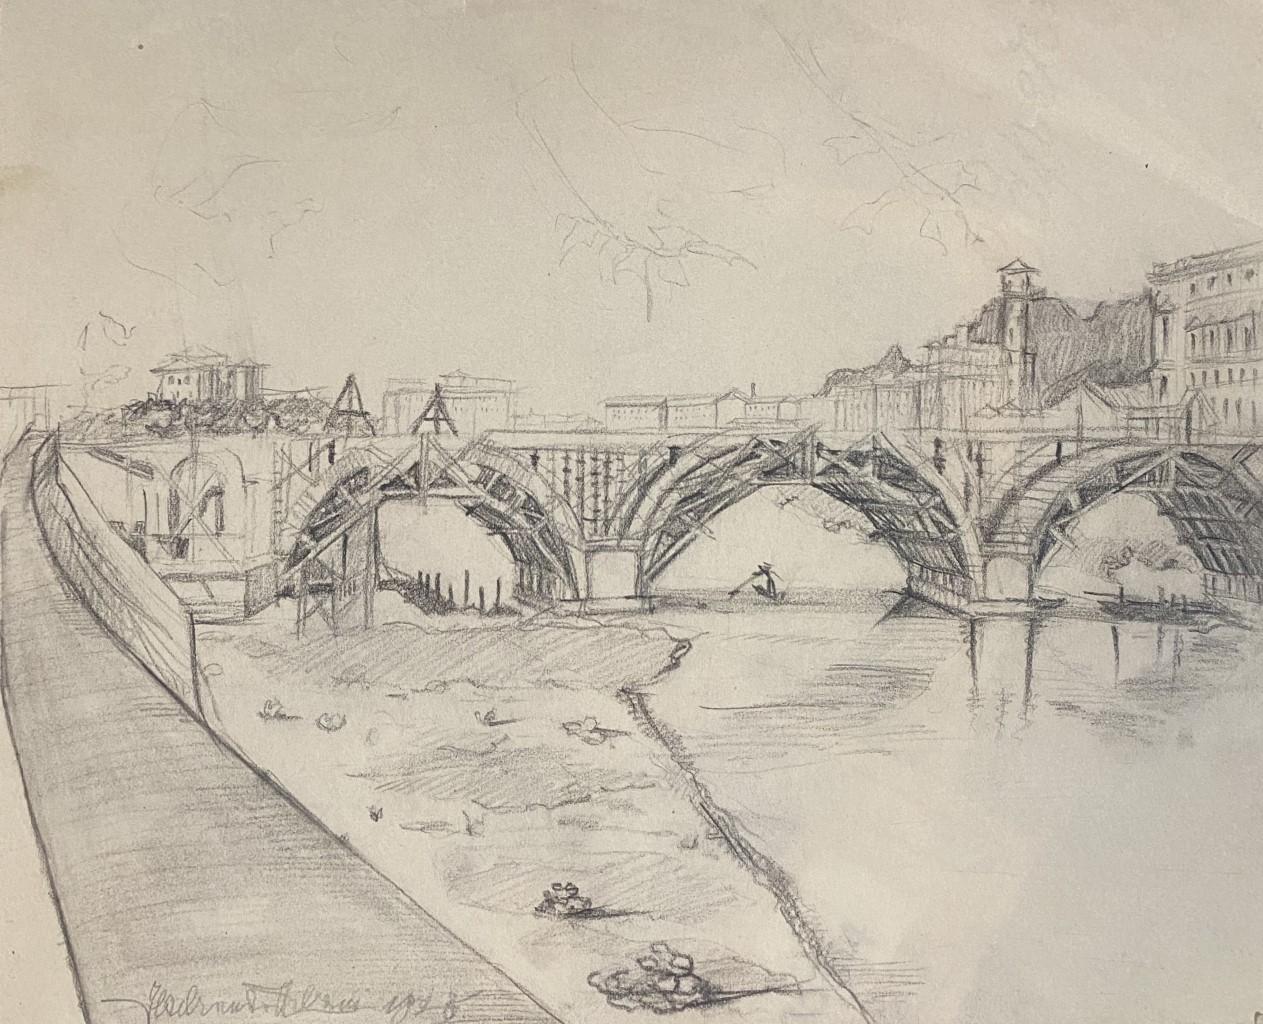 Landschaft ist eine Original-Bleistiftzeichnung auf cremefarbenem Papier des italienischen Künstlers Ildebrando Urbani (1901 - 1985).

Realisiert von einer sehr geschickten und schnellen Hand, stellt diese Originalzeichnung die Brücke und die